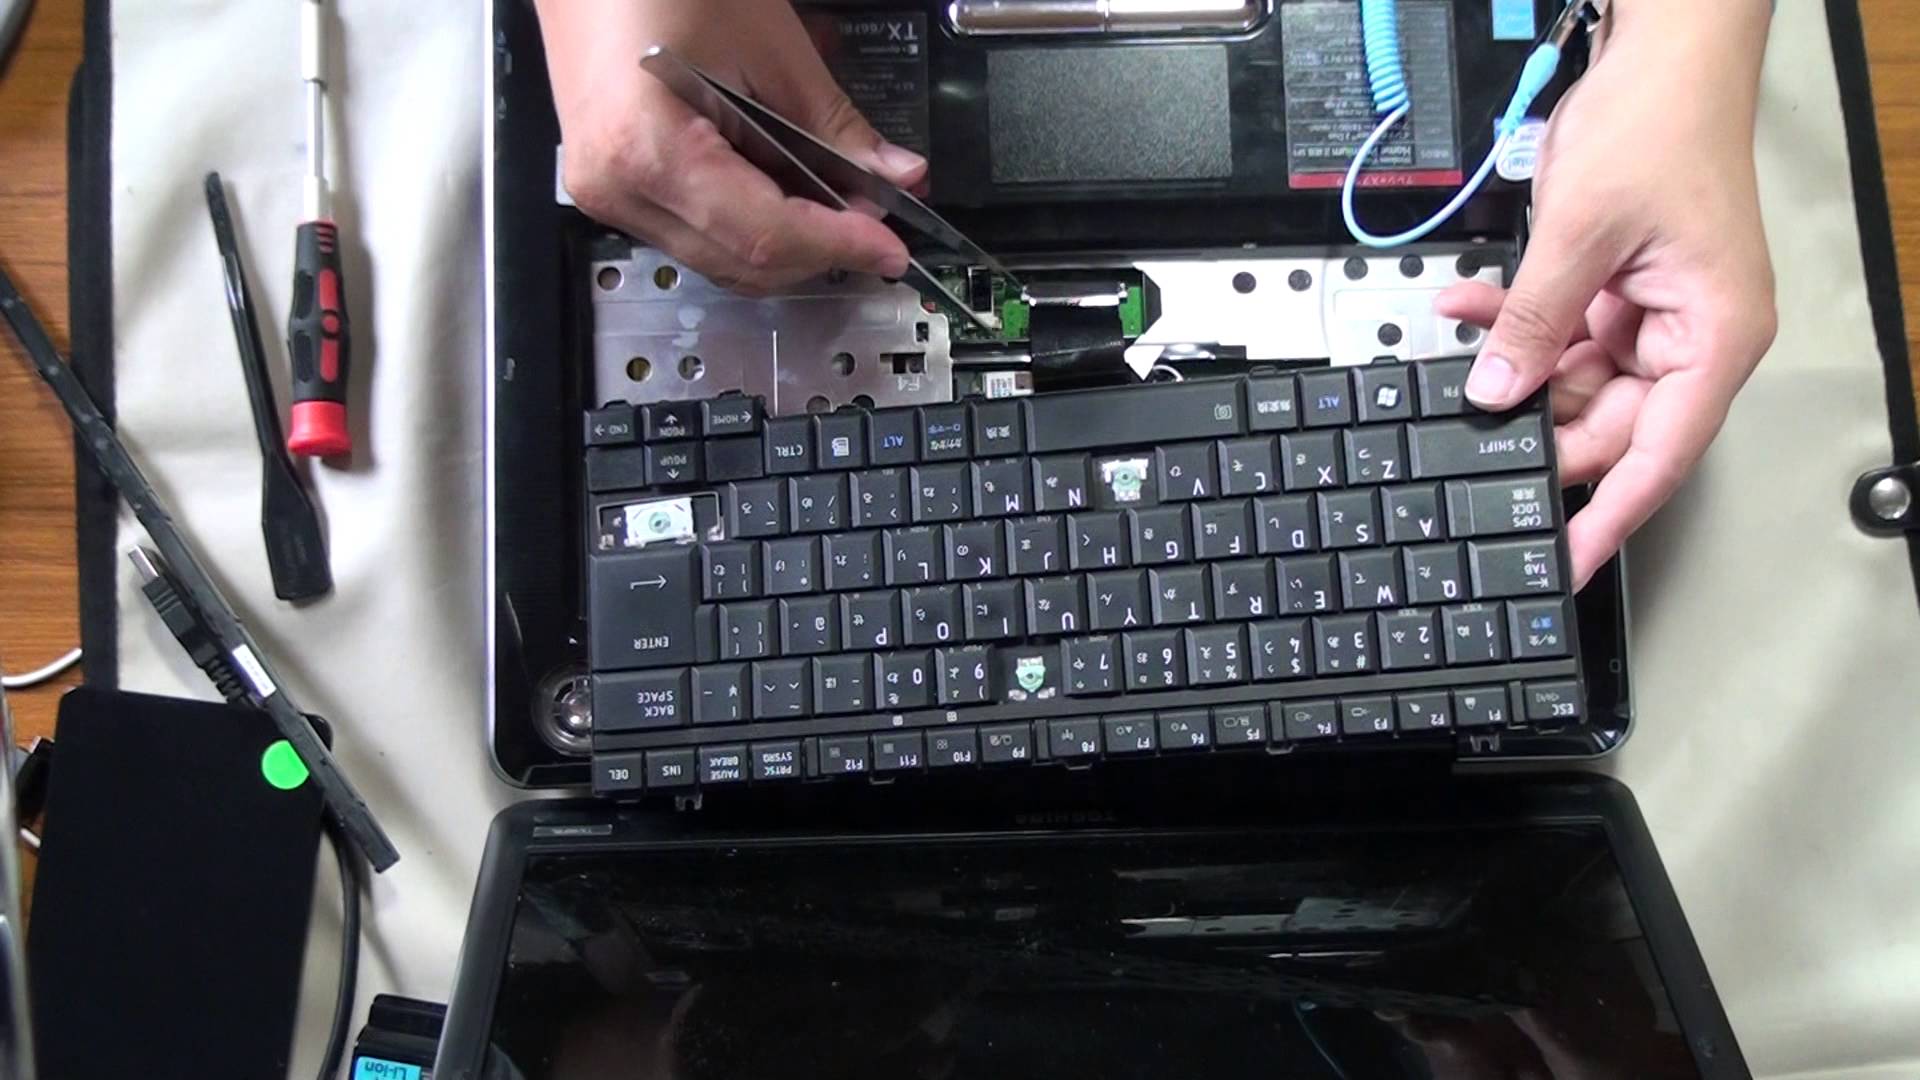 パソコン修理 Toshiba Dynabook Tx 66fbl キーボード交換 データを残すパソコン修理 Pc修理なら 江戸川パソコンおたすけ隊